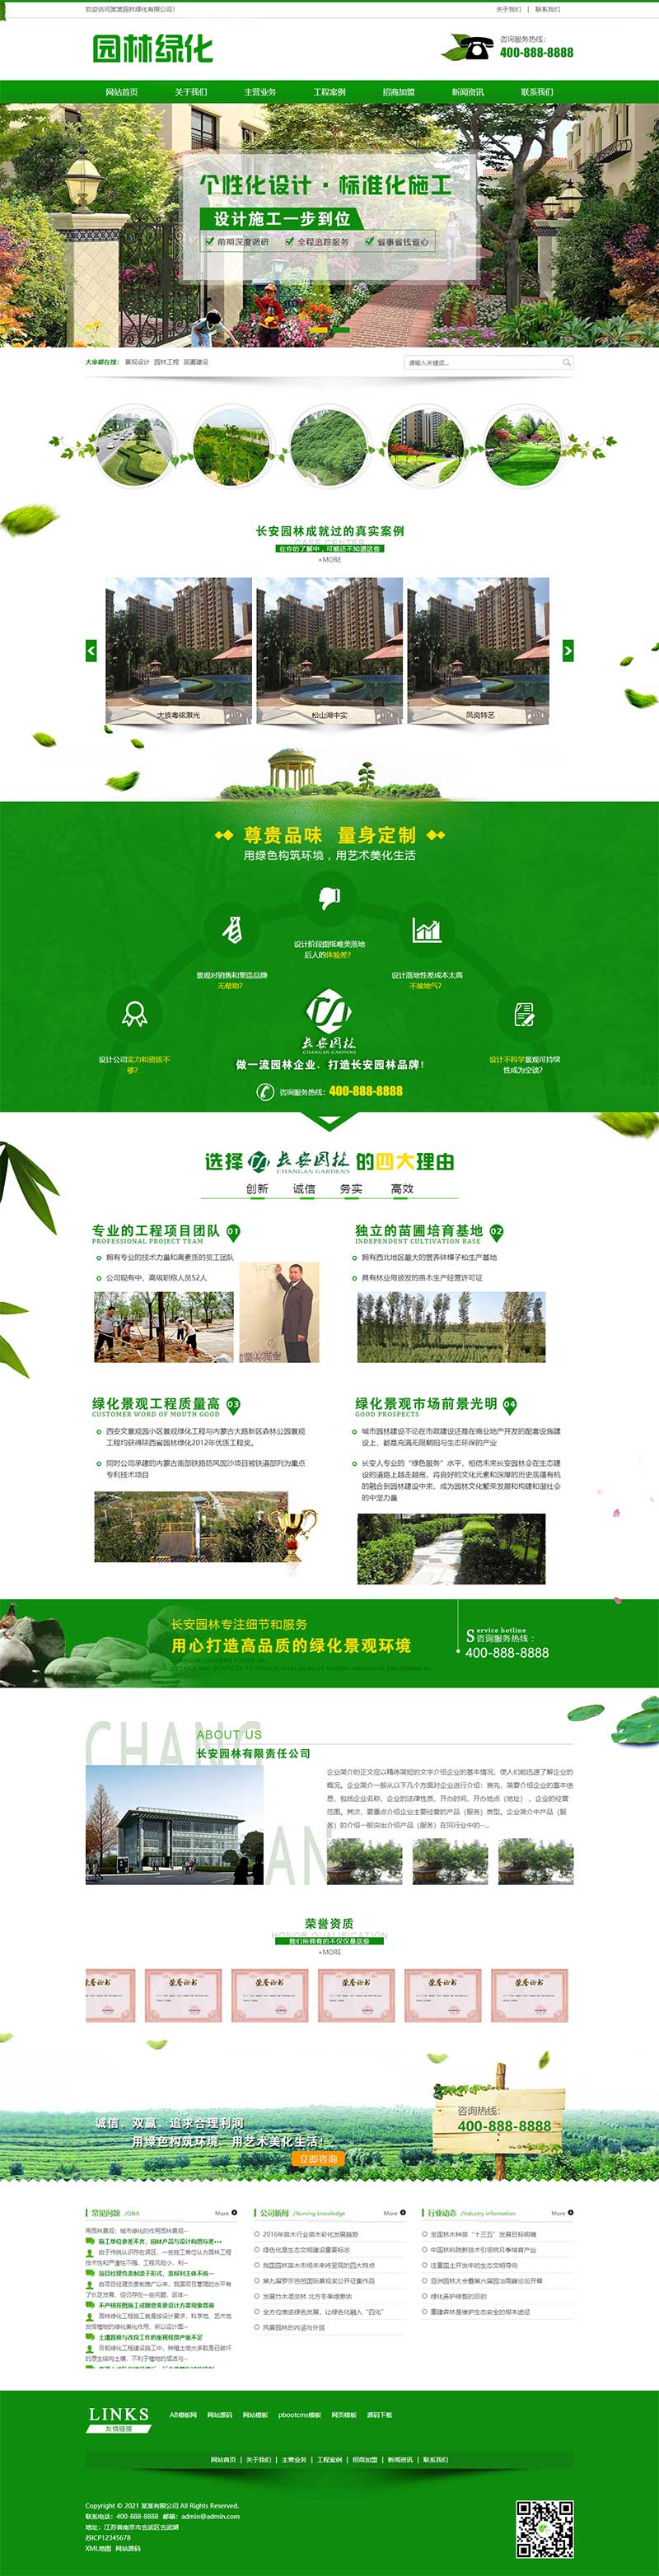 (PC+手机版)绿色清新园林绿化园林设计园林工程网站源码电脑端展示图片